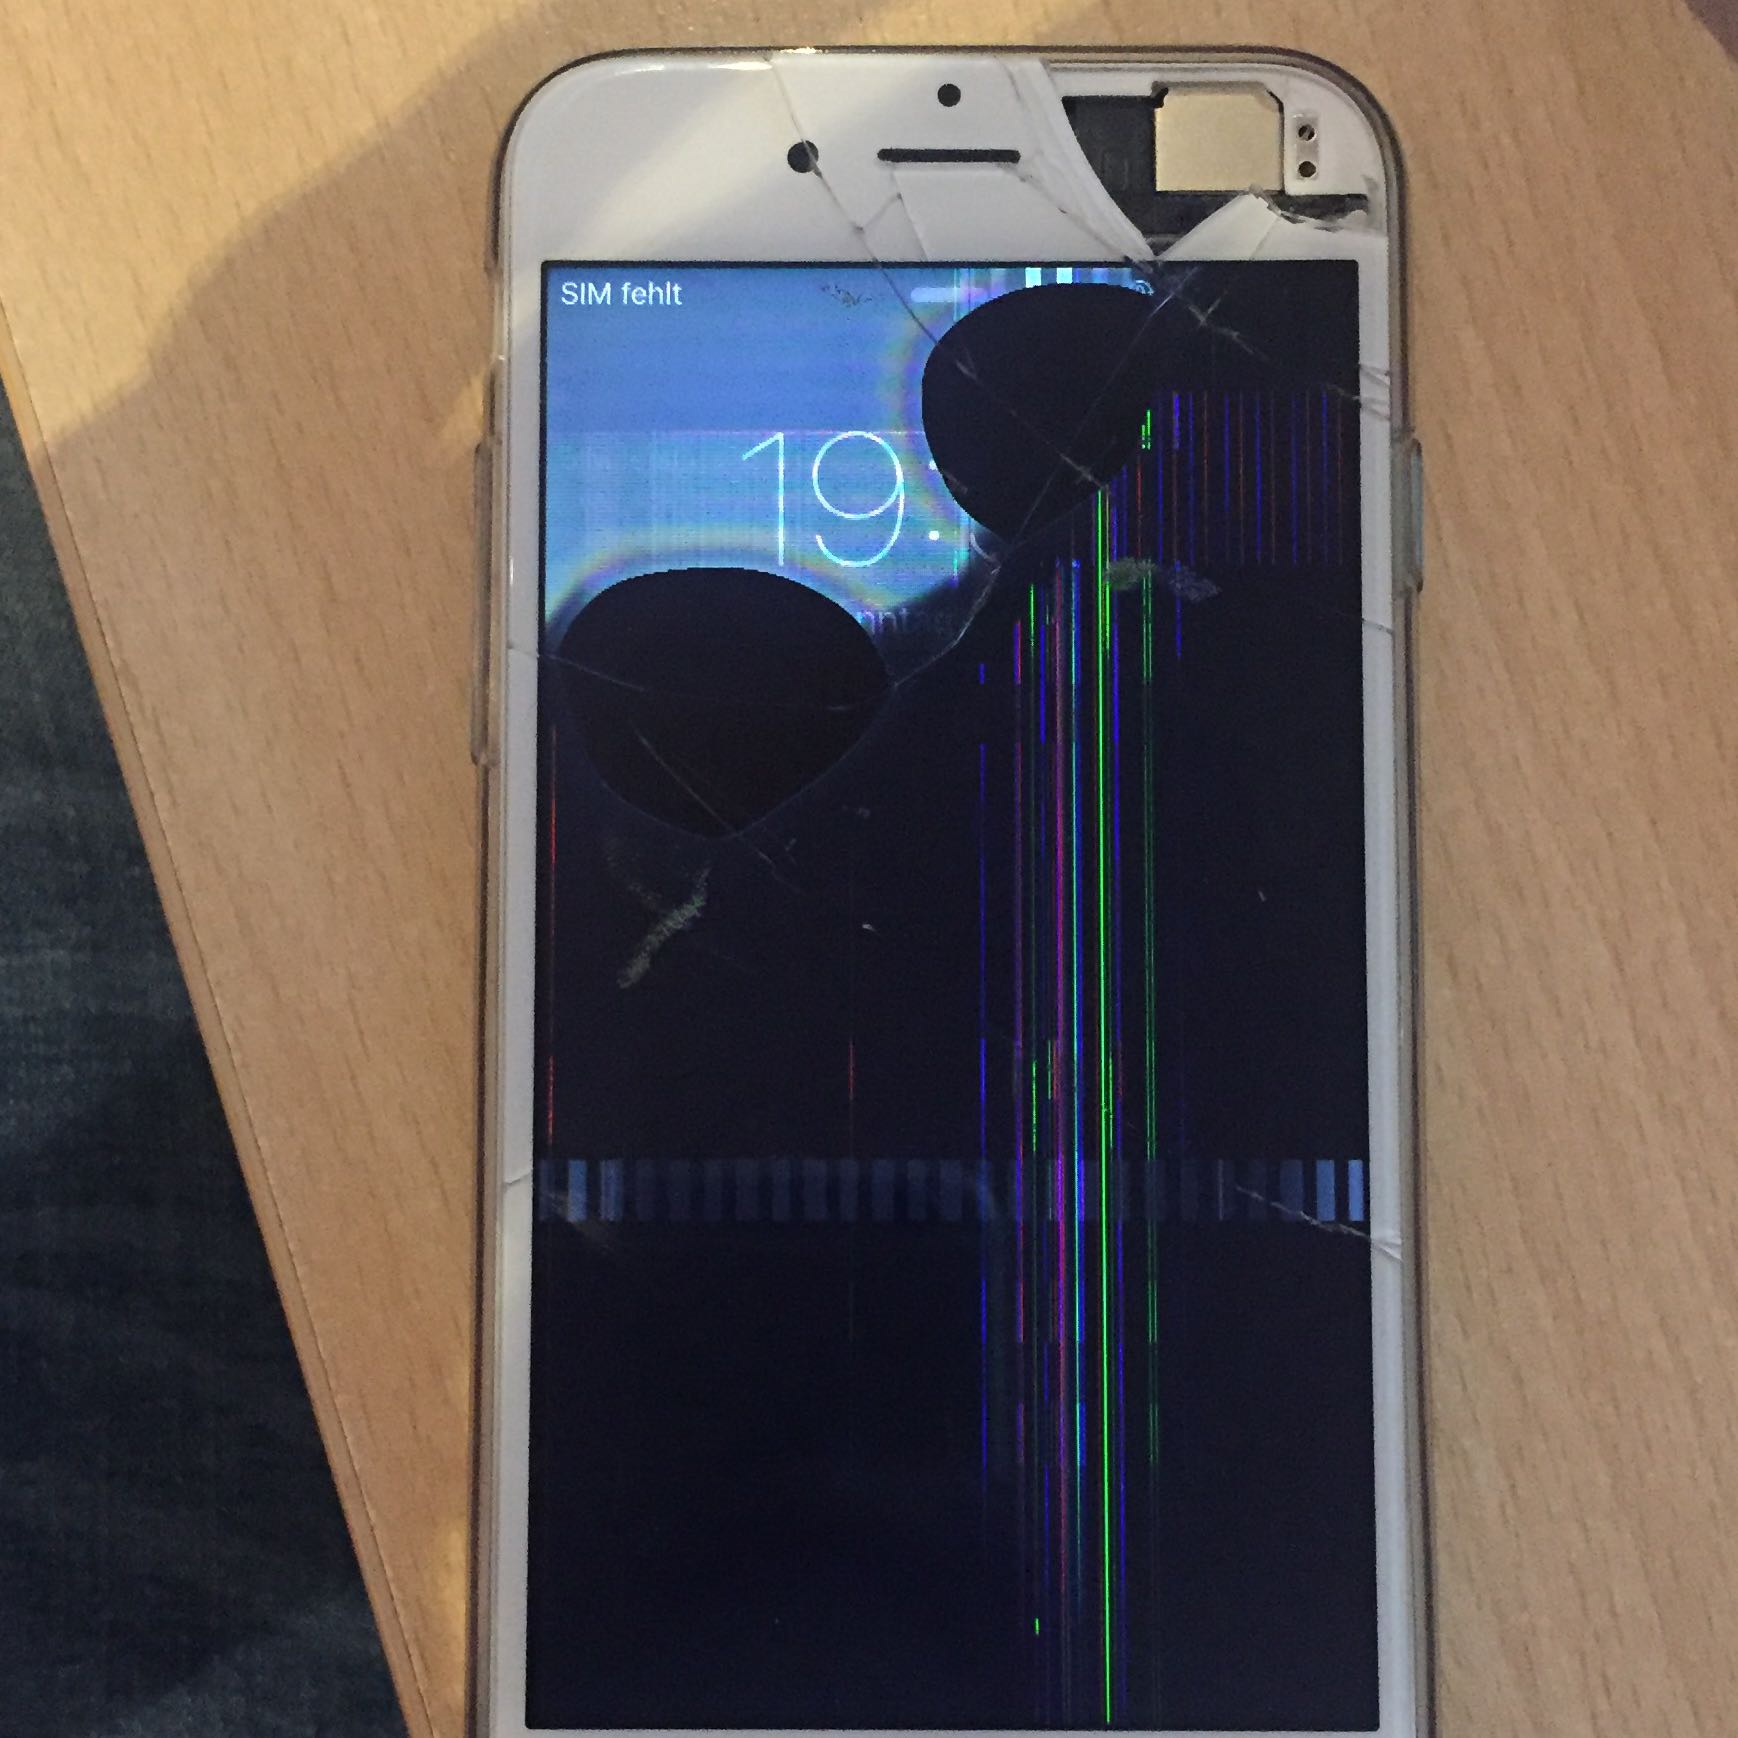 IPhone 6 runtergefa   llen und jetzt kaputt? (Handy, Display)